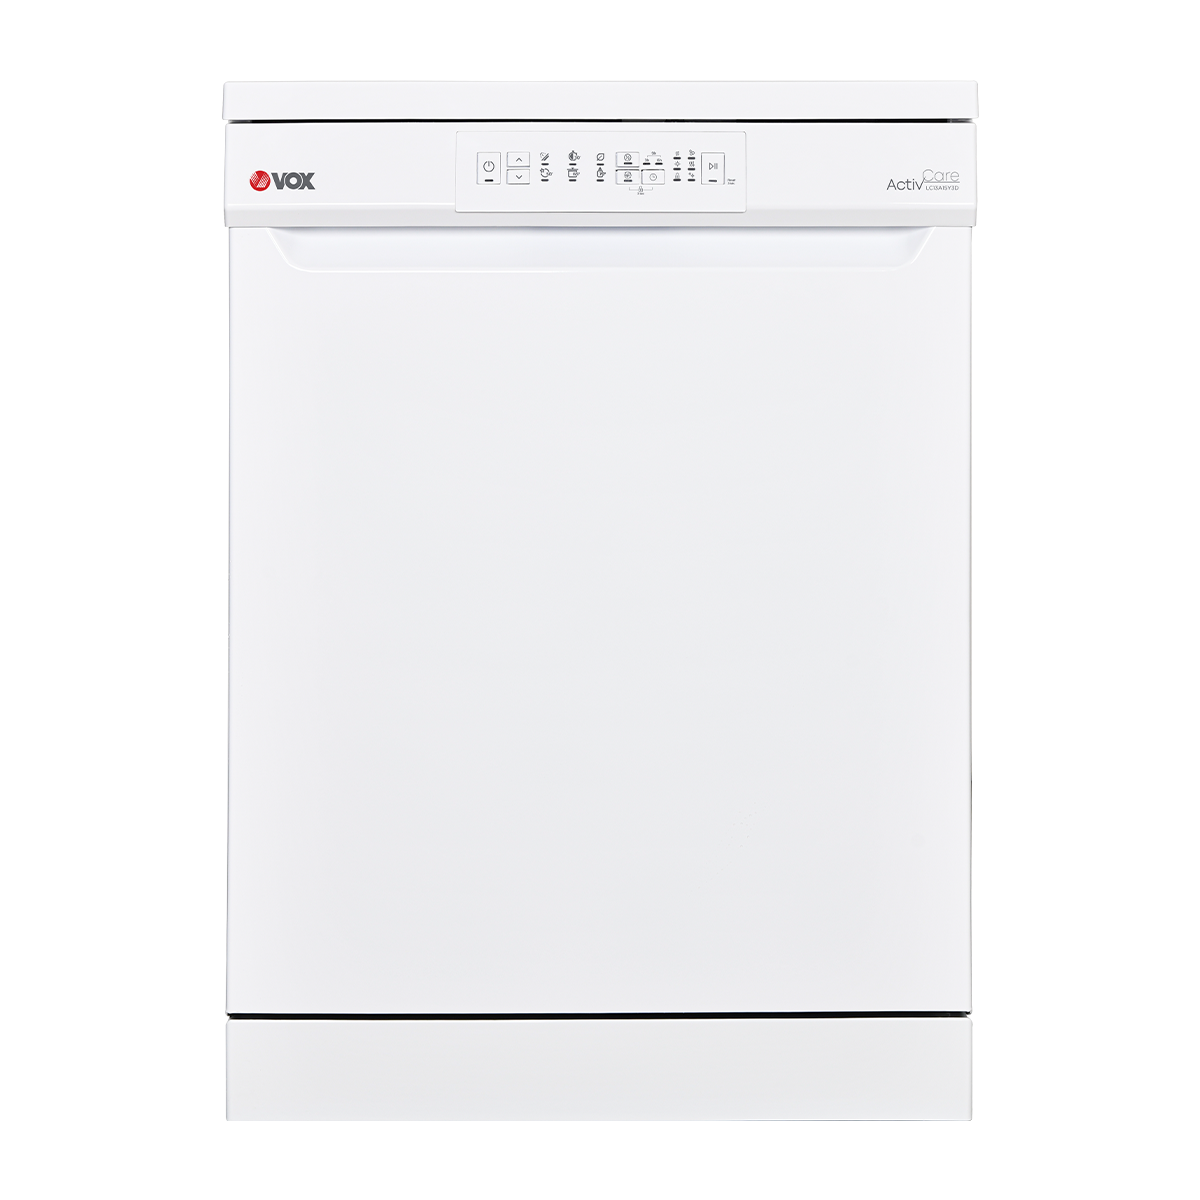 Dishwasher LC 13A15 Y3D 